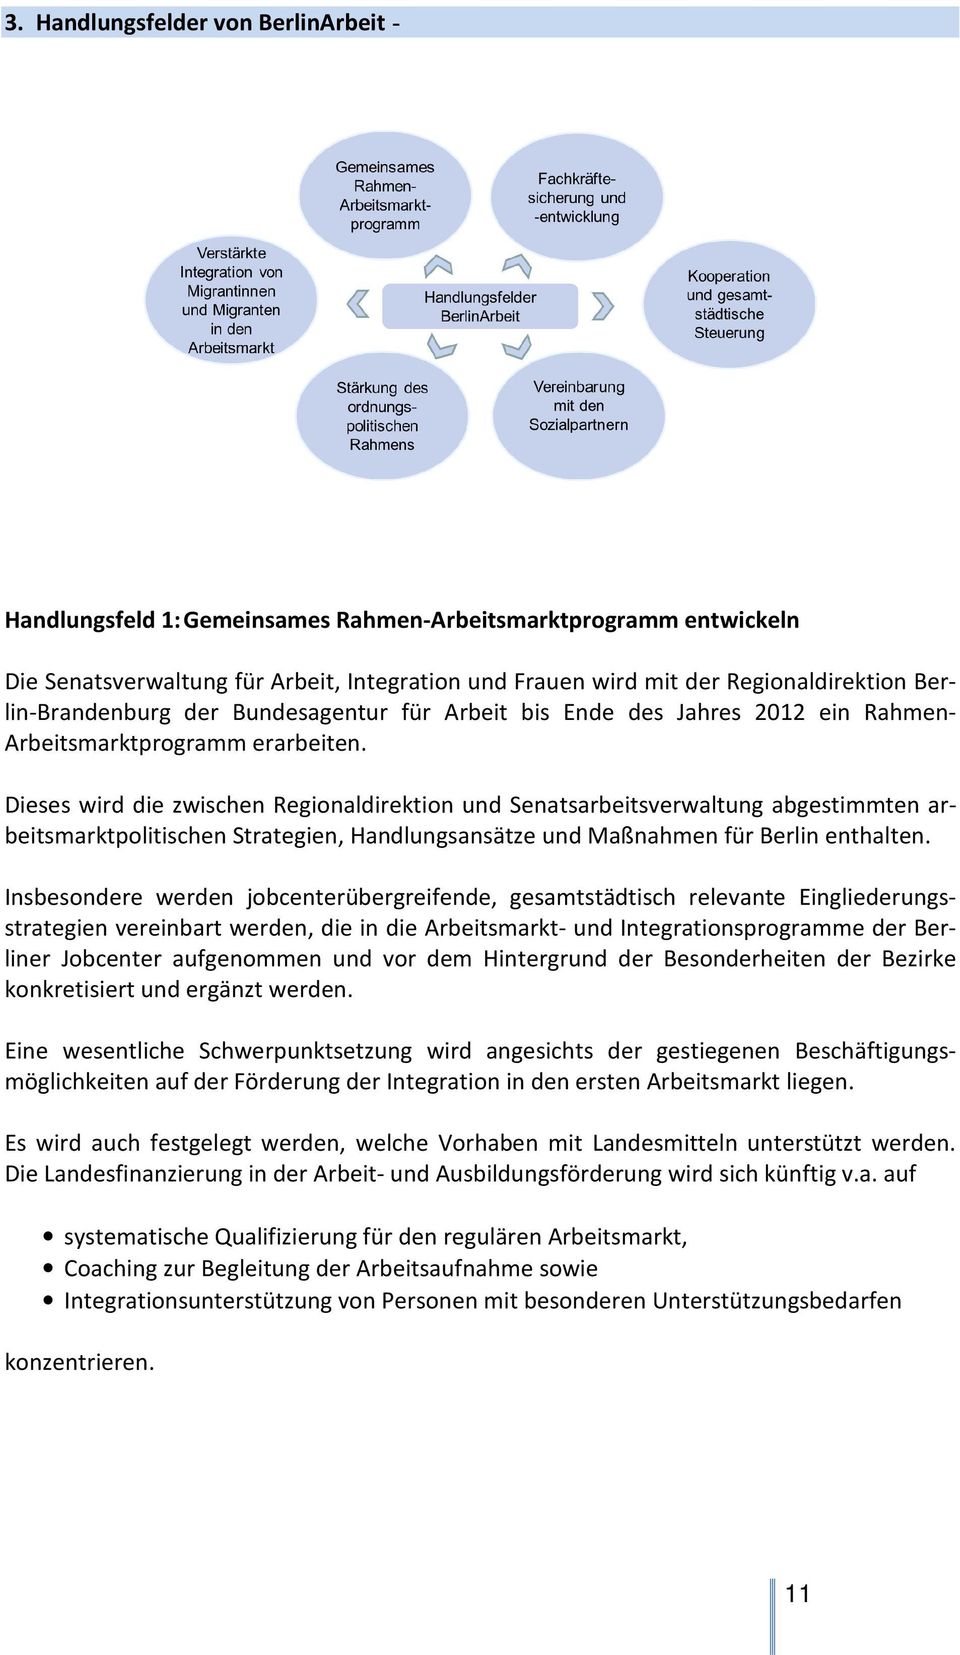 Dieses wird die zwischen Regionaldirektion und Senatsarbeitsverwaltung abgestimmten arbeitsmarktpolitischen Strategien, Handlungsansätze und Maßnahmen für Berlin enthalten.